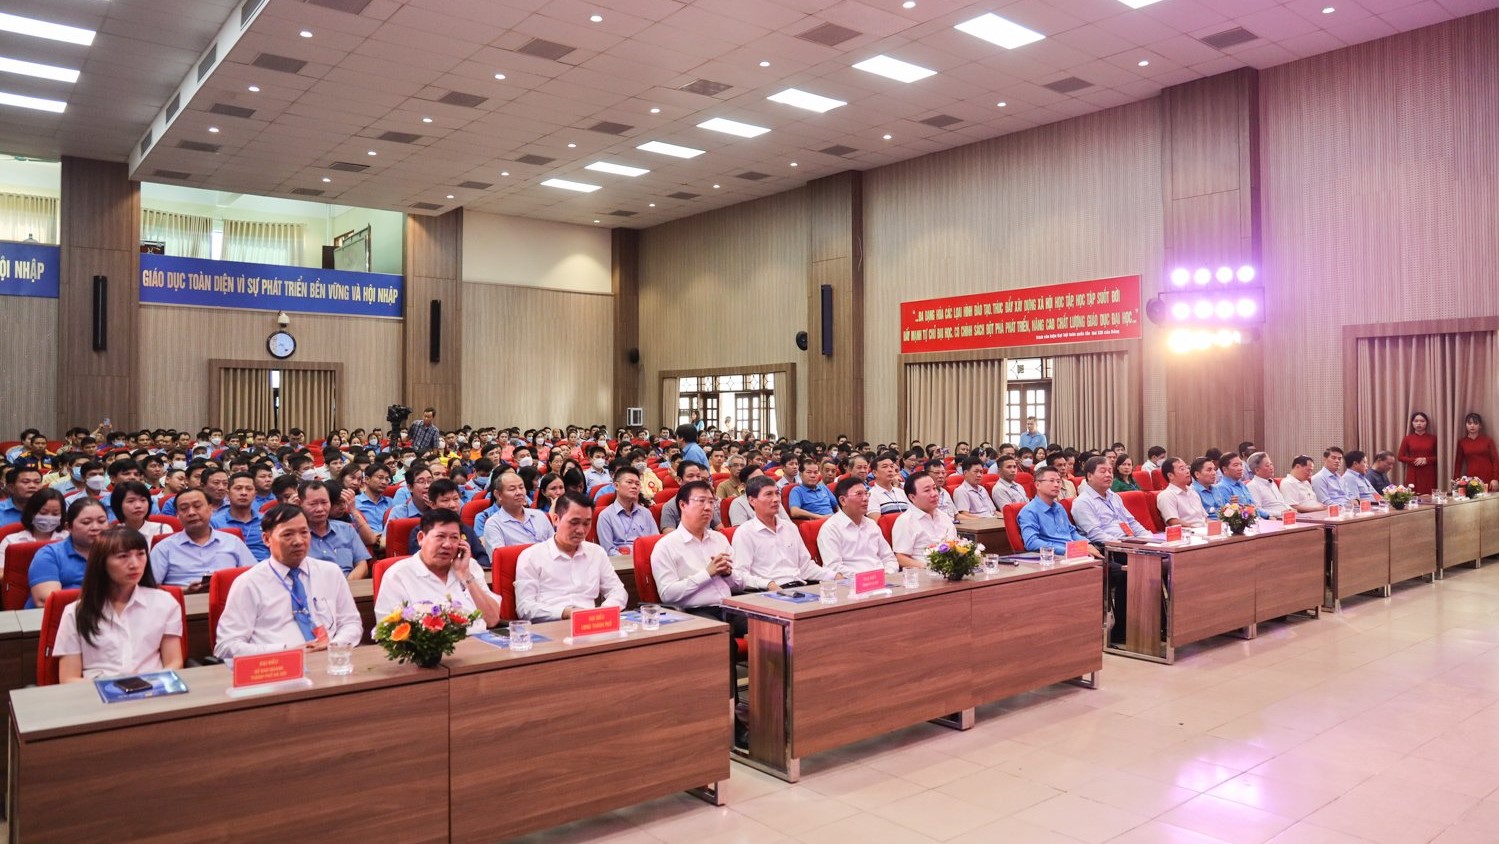 Hội thi thợ giỏi Thành phố Hà Nội lần thứ 2 diễn ra sôi nổi tại Trường Đại học Công nghiệp Hà Nội